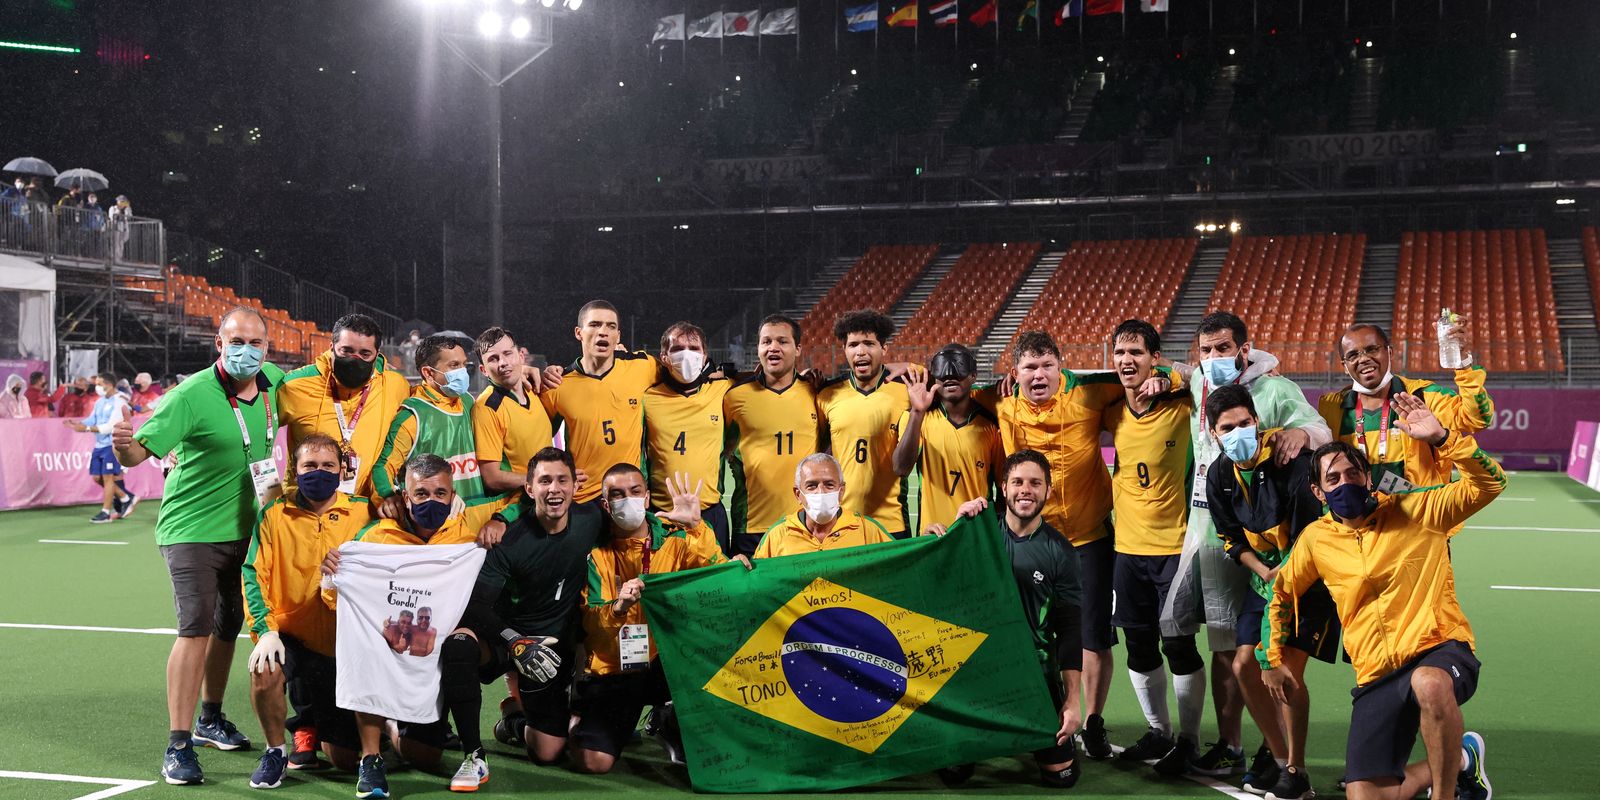 Com vitória no futebol, Brasil iguala o recorde de ouros em uma